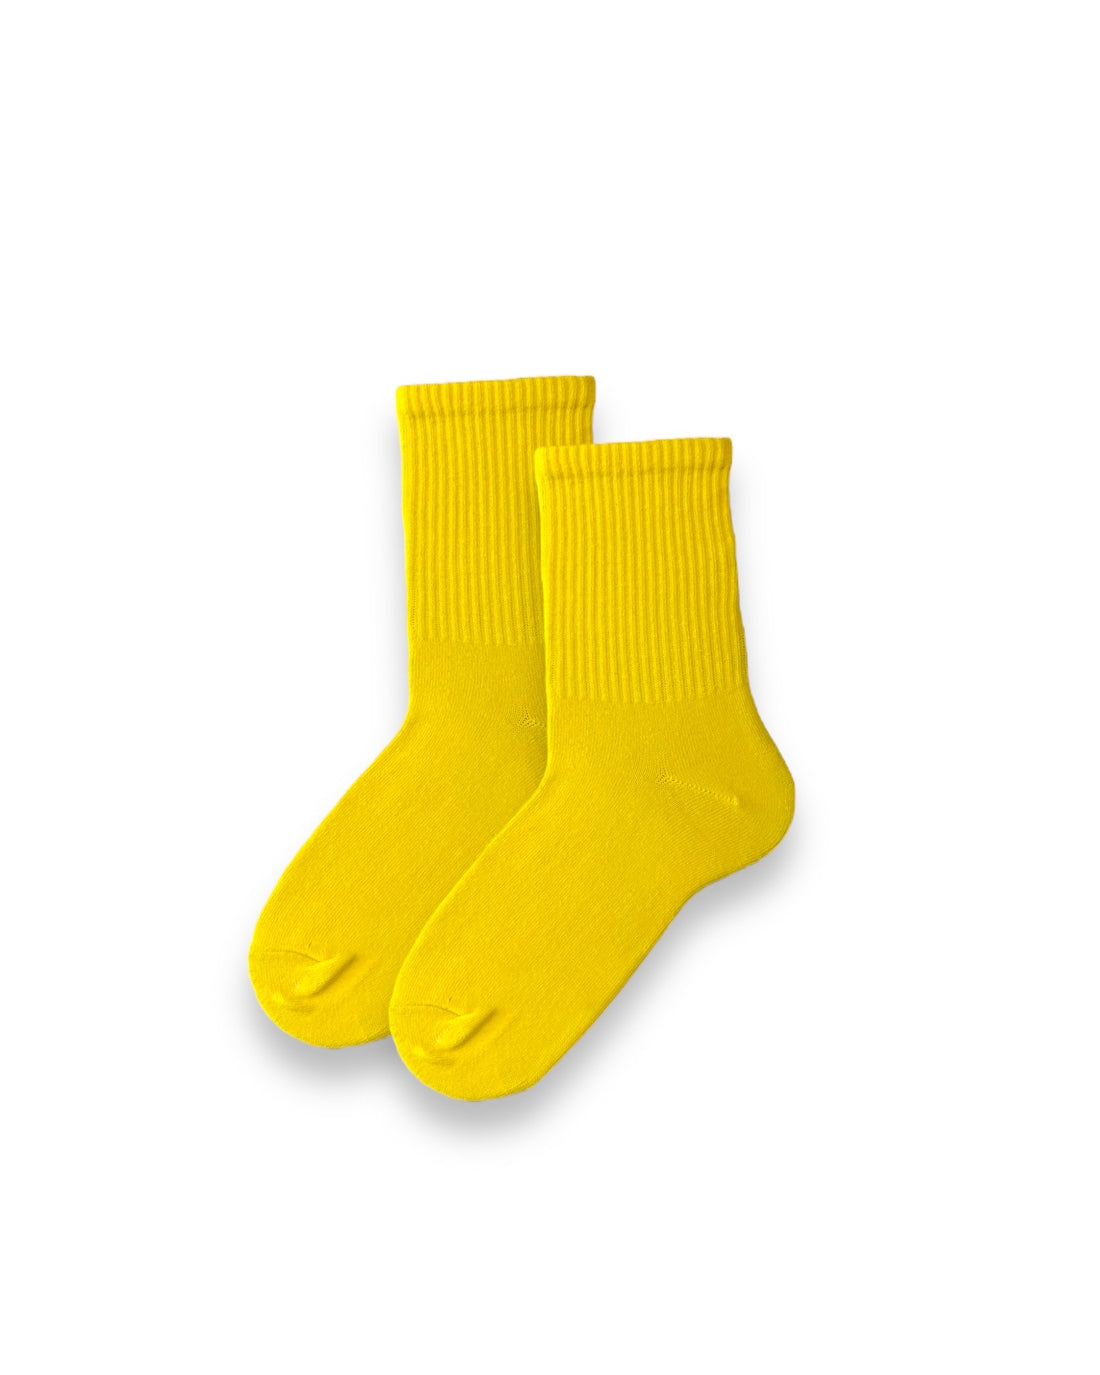 Düz Sarı Unisex Çorap